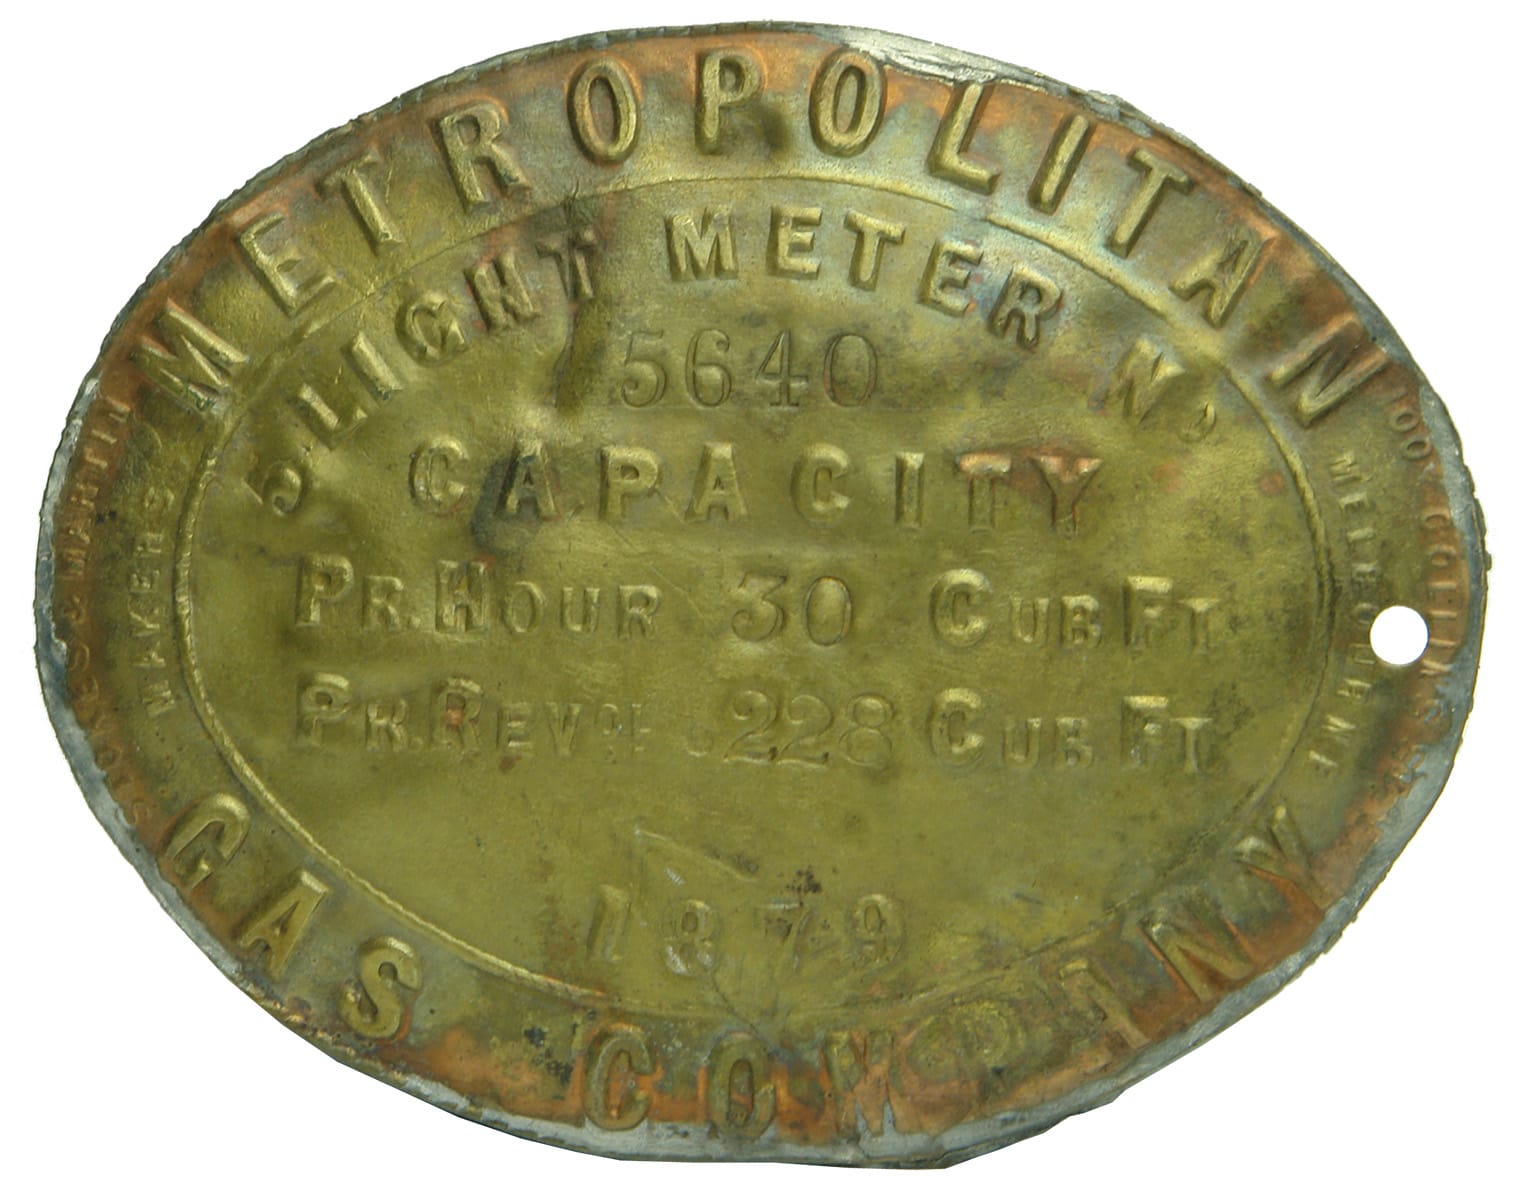 Metropolitan Gas Meter Brass Plaque